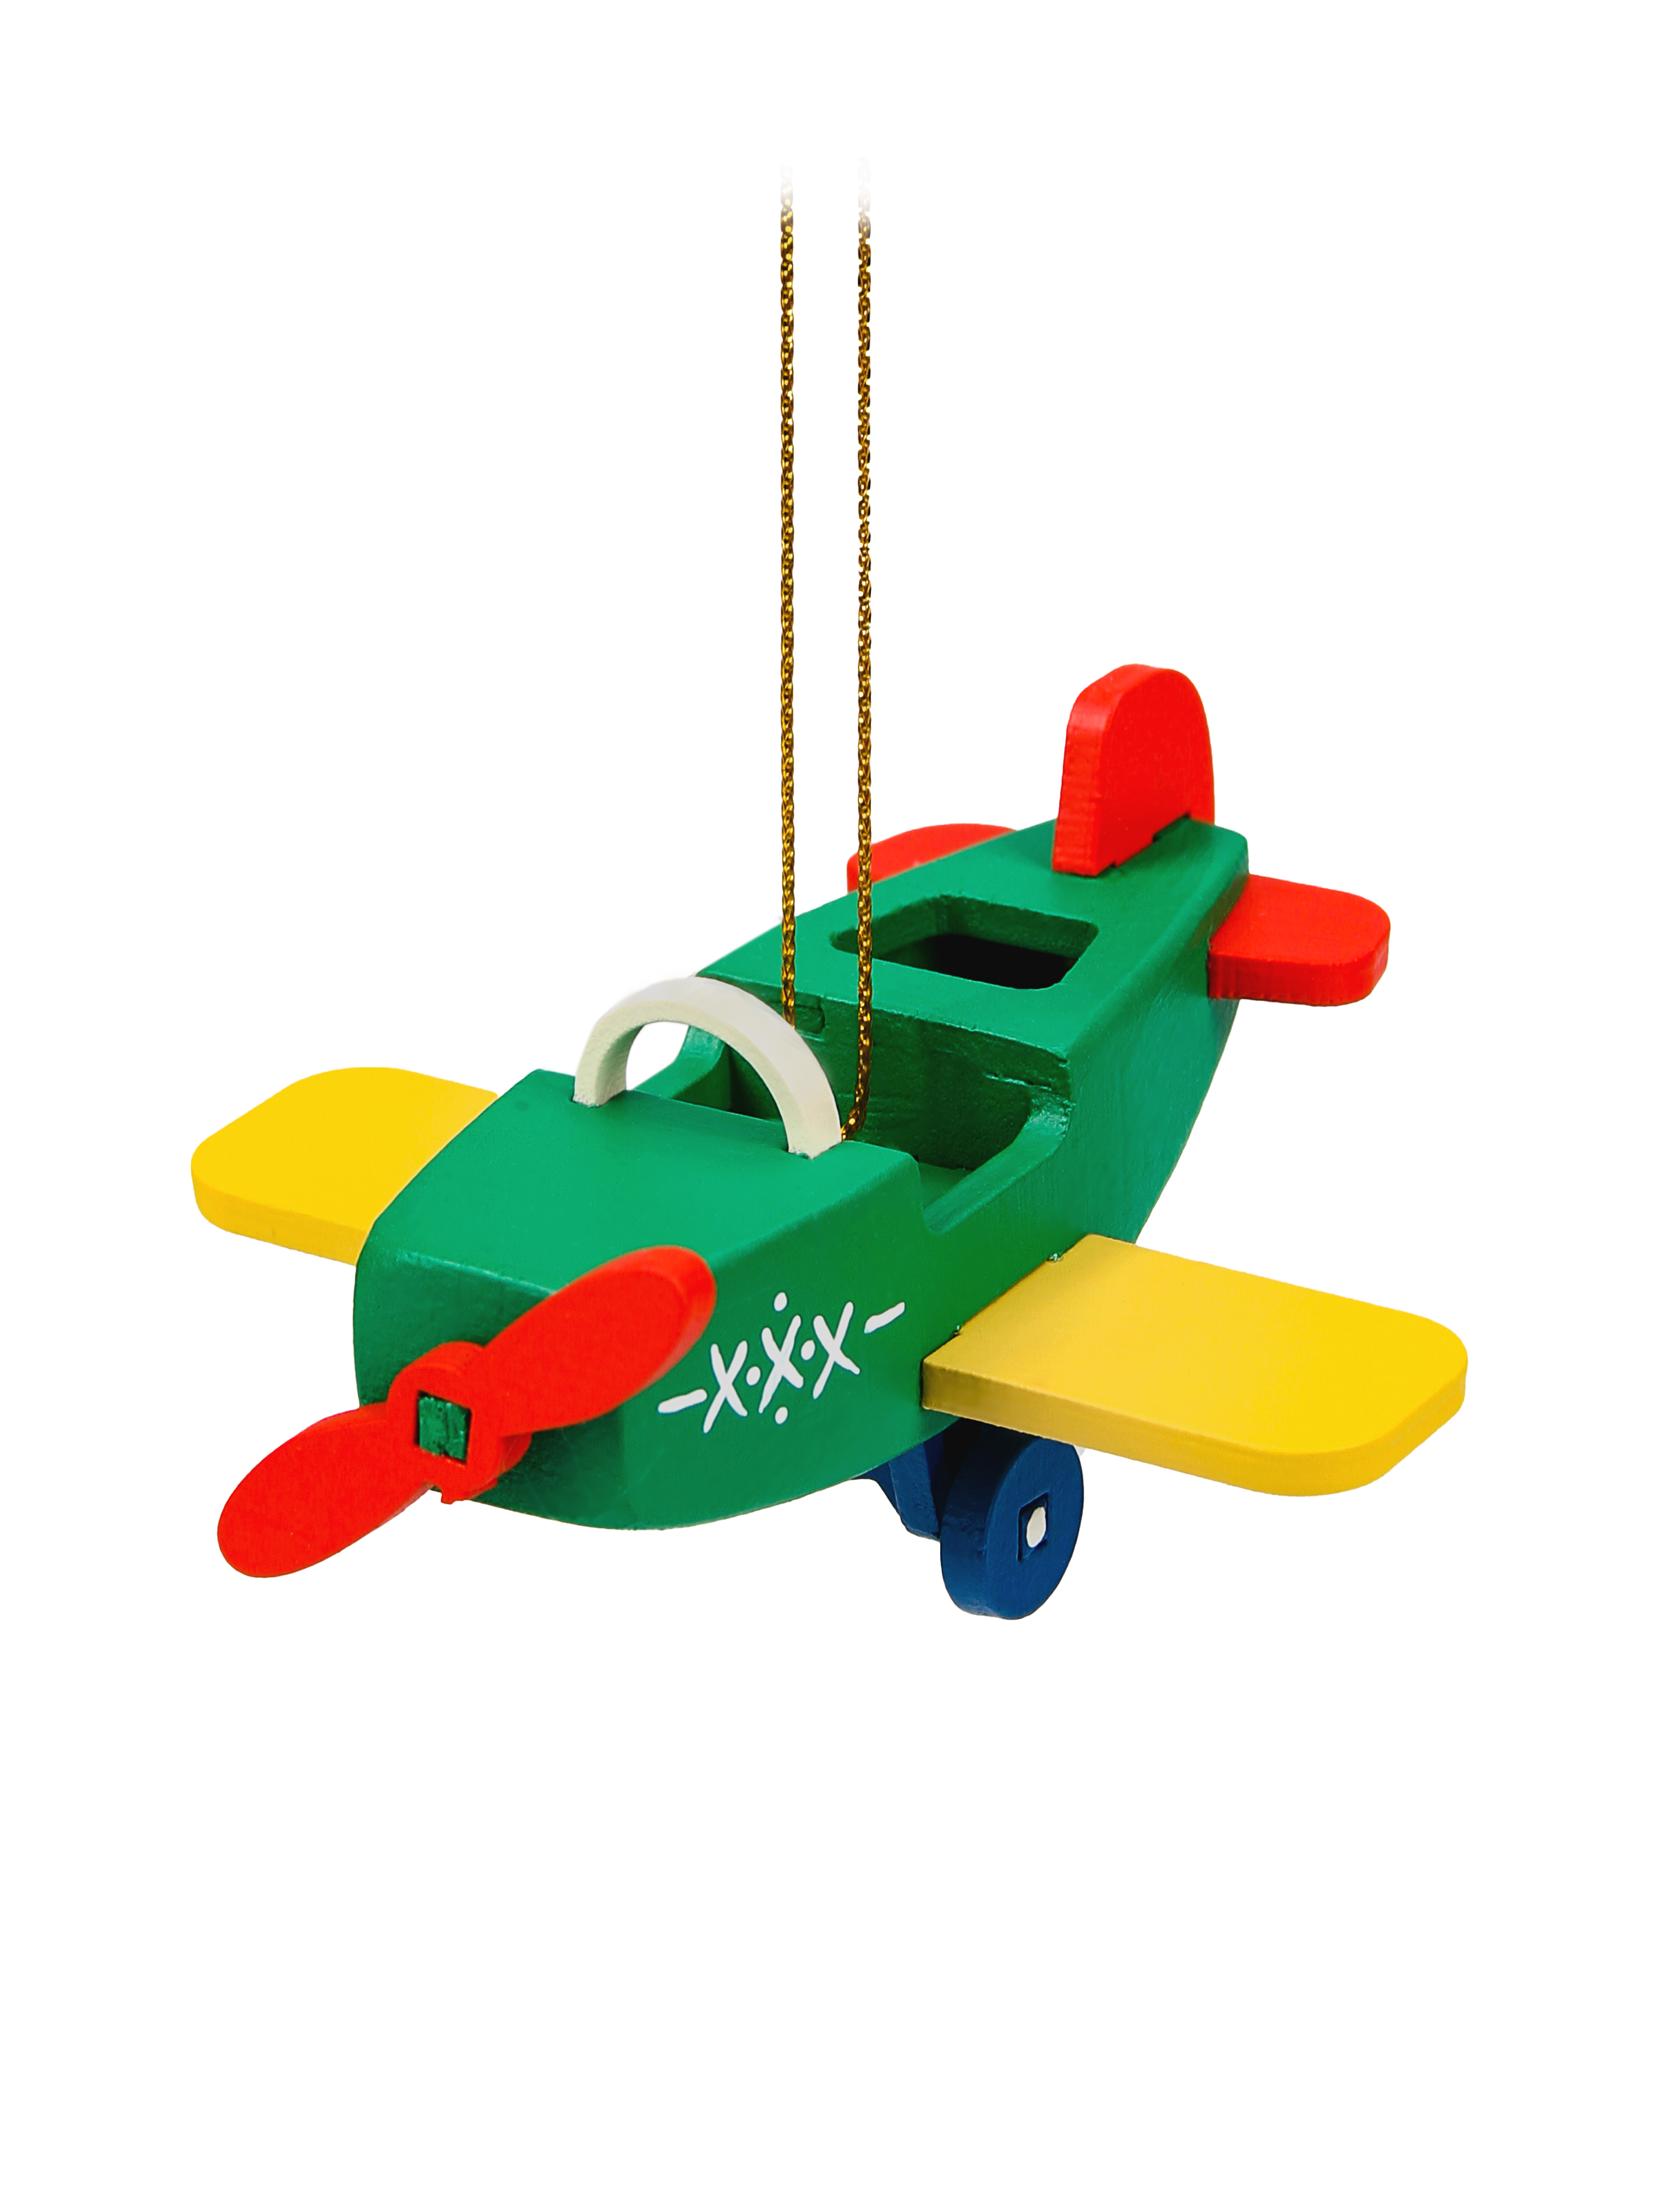 фото Елочная игрушка самолет wood-souvenirs t04208-ws/popp_m_sc_6029 1 шт. разноцветная